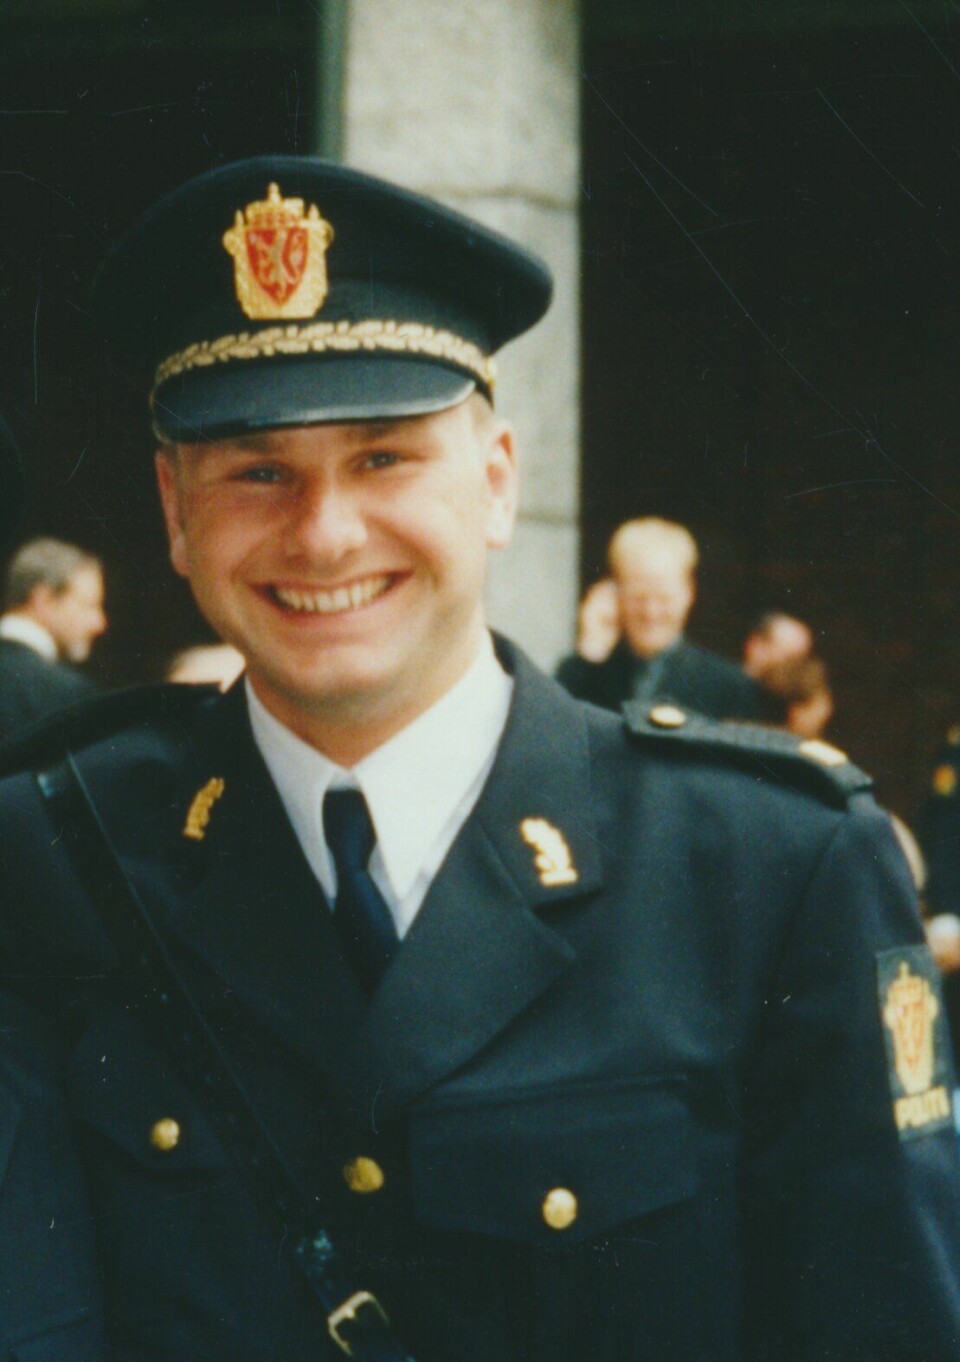 LILLEBROR: Stian som nyutdannet politimann etter uteksamineringen fra Politihøgskolen i 2002.